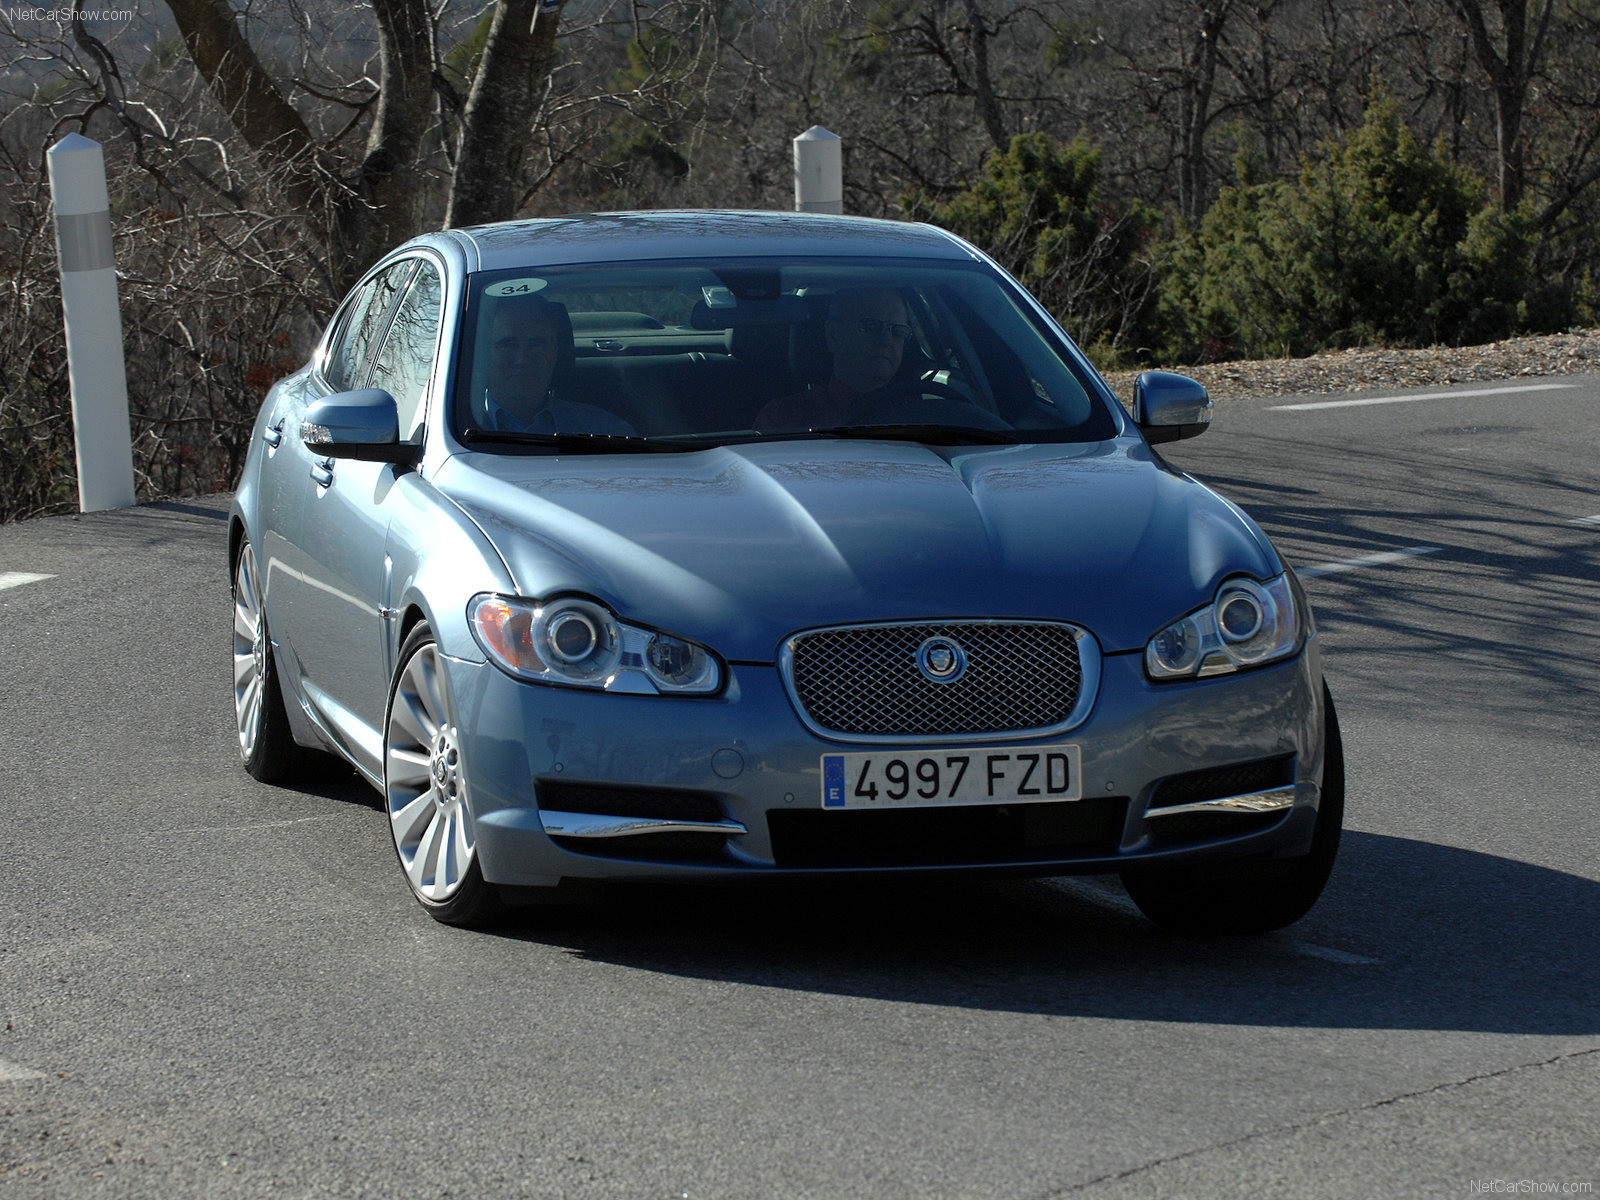 Jaguar 2008. Jaguar XF 2008. Jaguar XF 2009 Tuning. Jaguar XF sv8. Ягуар XF 2010 голубой.